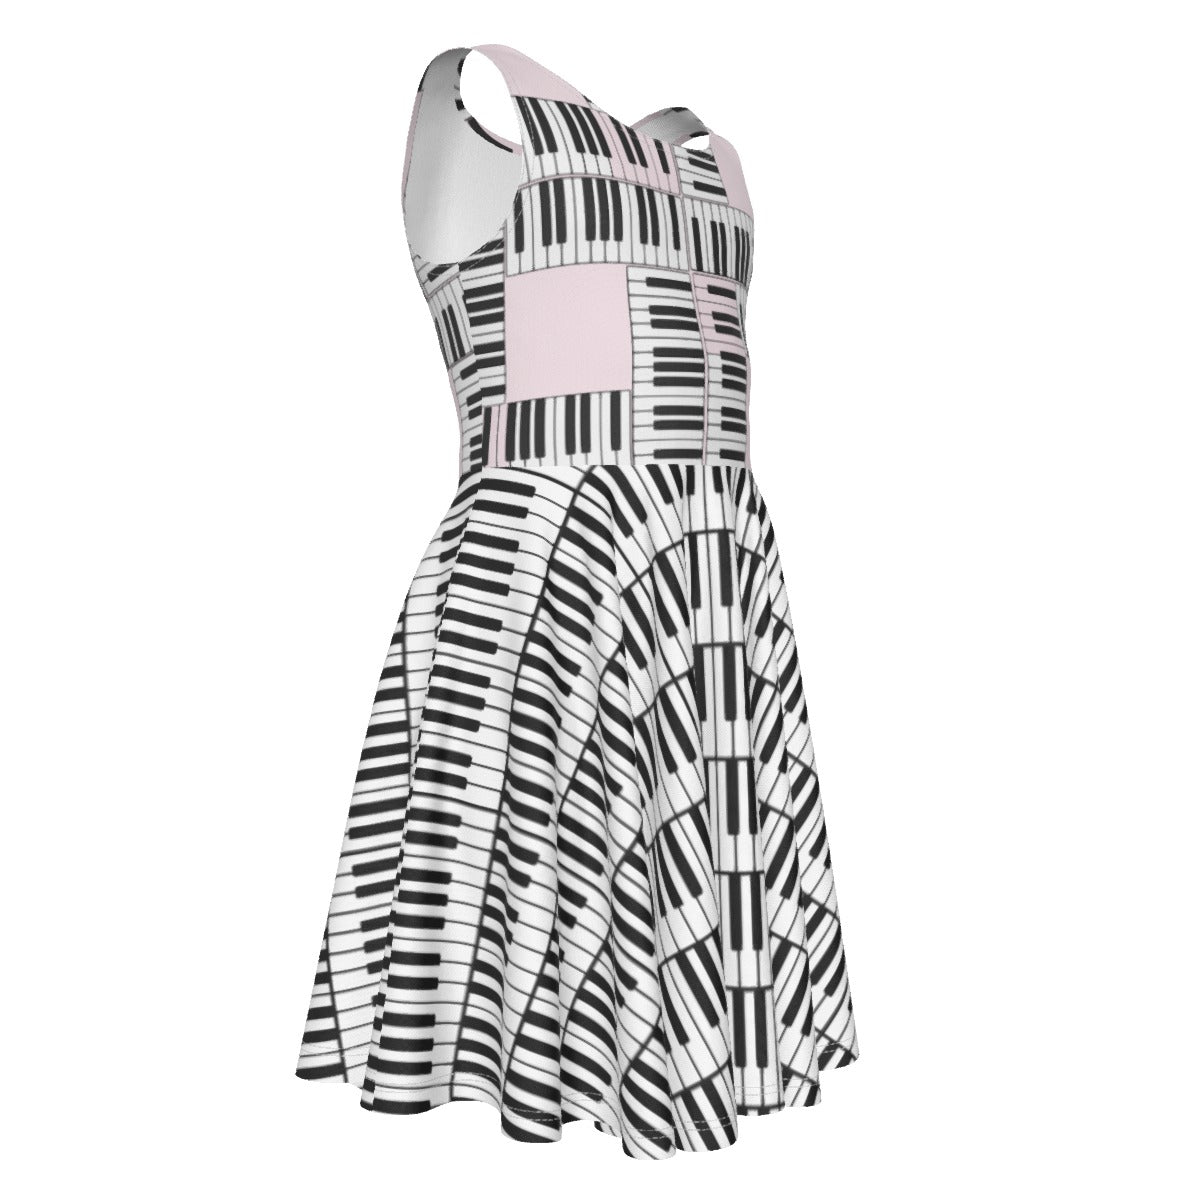 Liberace Piano Key Pattern Sleeveless Dress